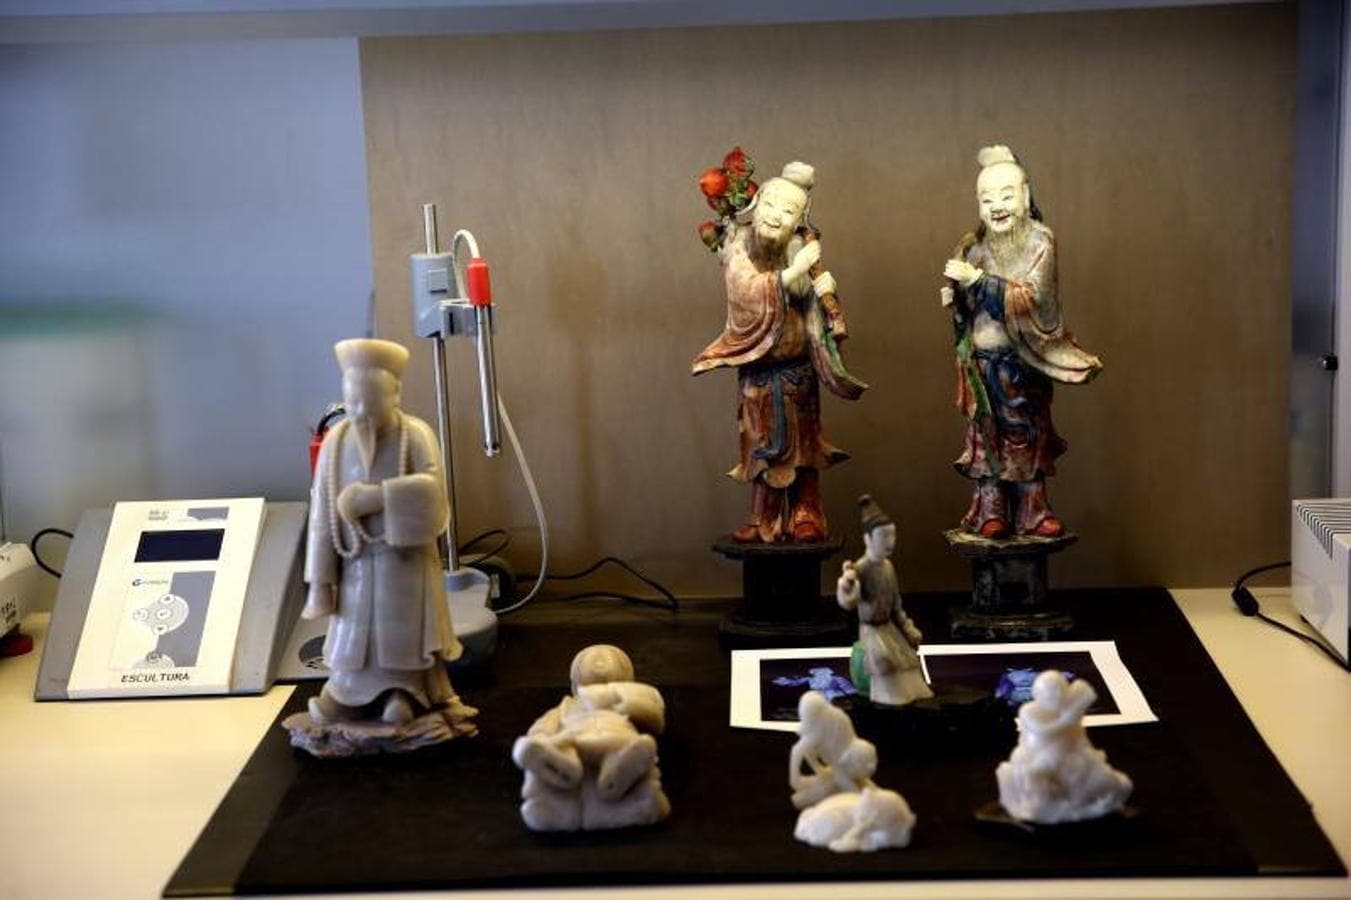 Figuras chinas del Museo Nacional de Artes Decorativas. Estas piezas llegaron a España a finales del siglo 18 a través de la Compañía de las Indias Orientales.